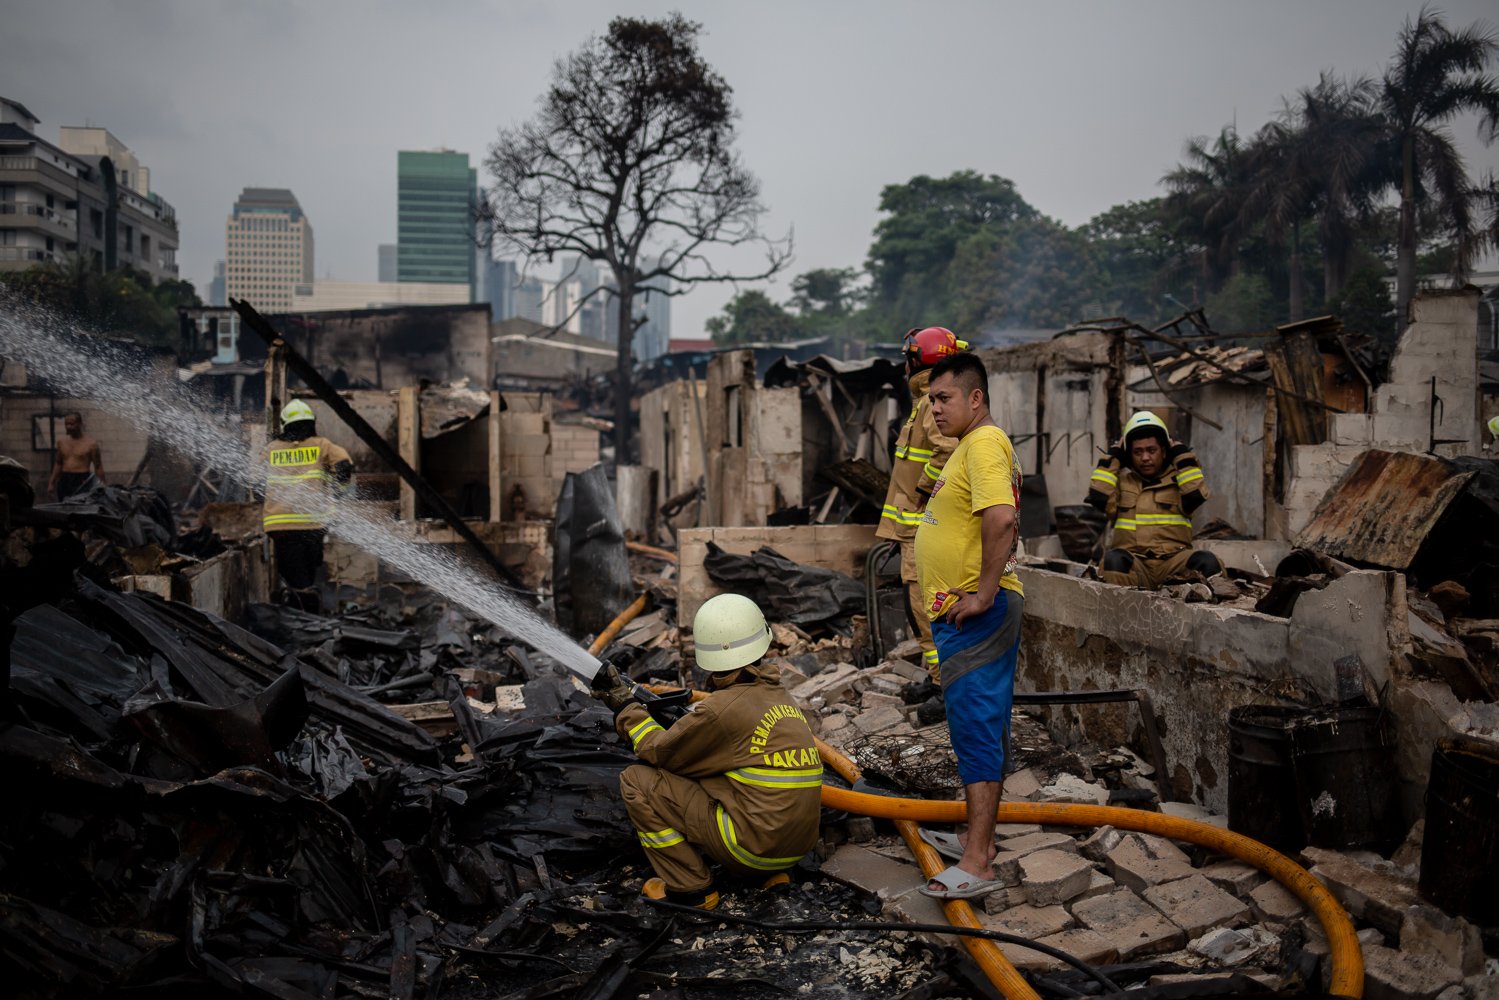 Suku Dinas Penanggulangan Kebakaran dan Penyelamatan (Gulkarmat) memadamkan kobaran api yang menghanguskan pemukiman padat penduduk di Jalan Simprug Golf II, Kecamatan Kebayoran Lama, Jakarta, Minggu (21/8). Akibat peristiwa tersebut 1 orang meninggal dunia diduga akibat kaget dan kelelahan. Selain itu, sebanyak 383 jiwa dari 164 KK harus mengungsi di tenda darurat.